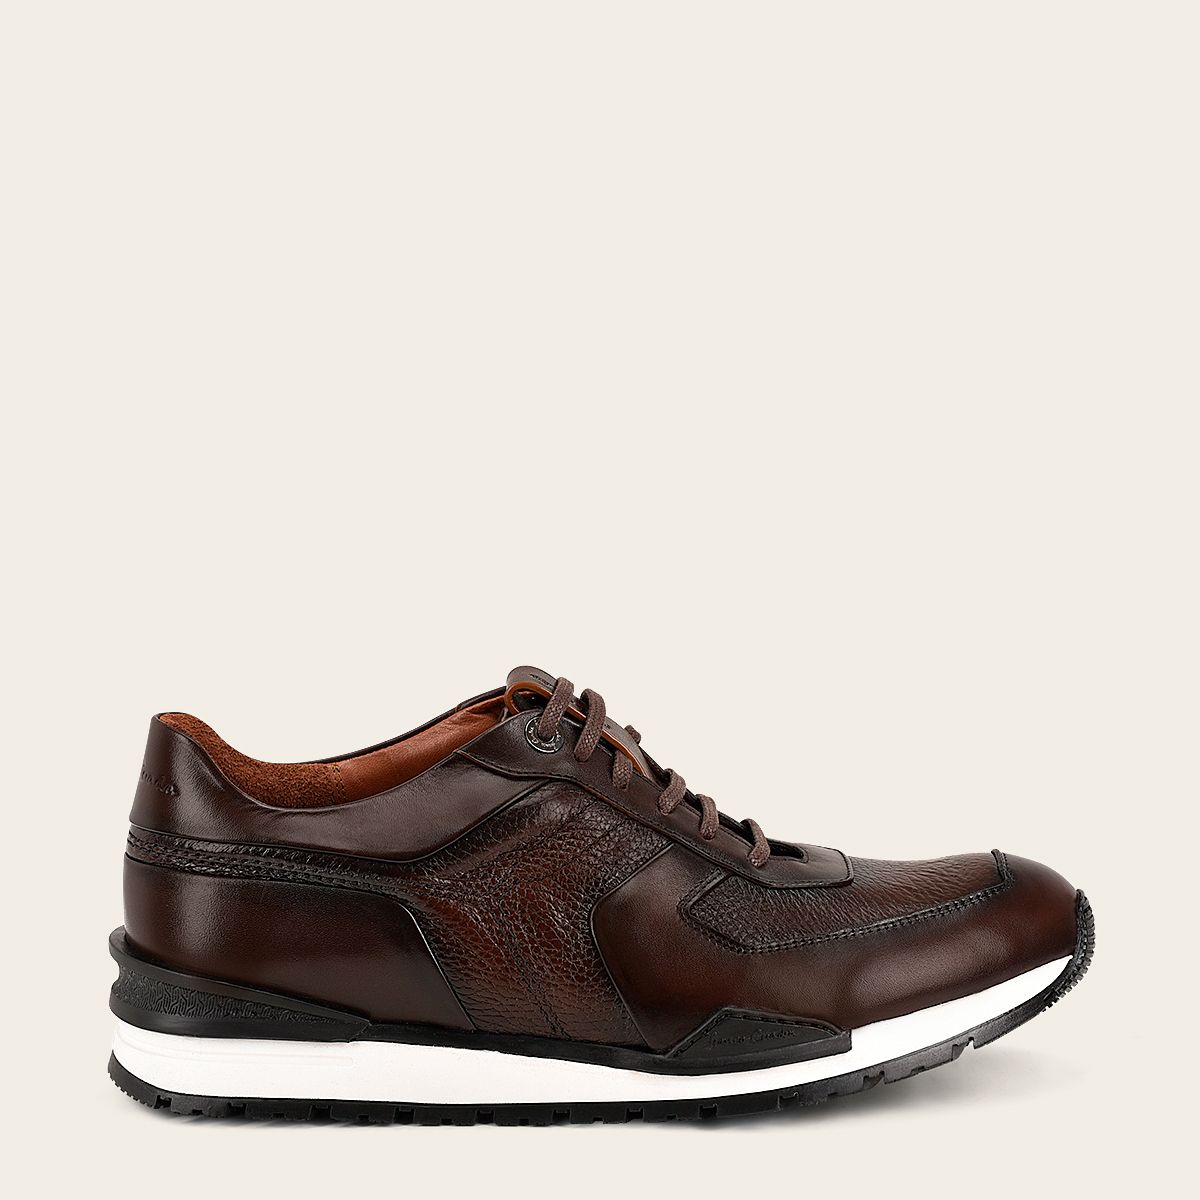 Brown deer leather sneakers - 132TSVN - Cuadra Shop